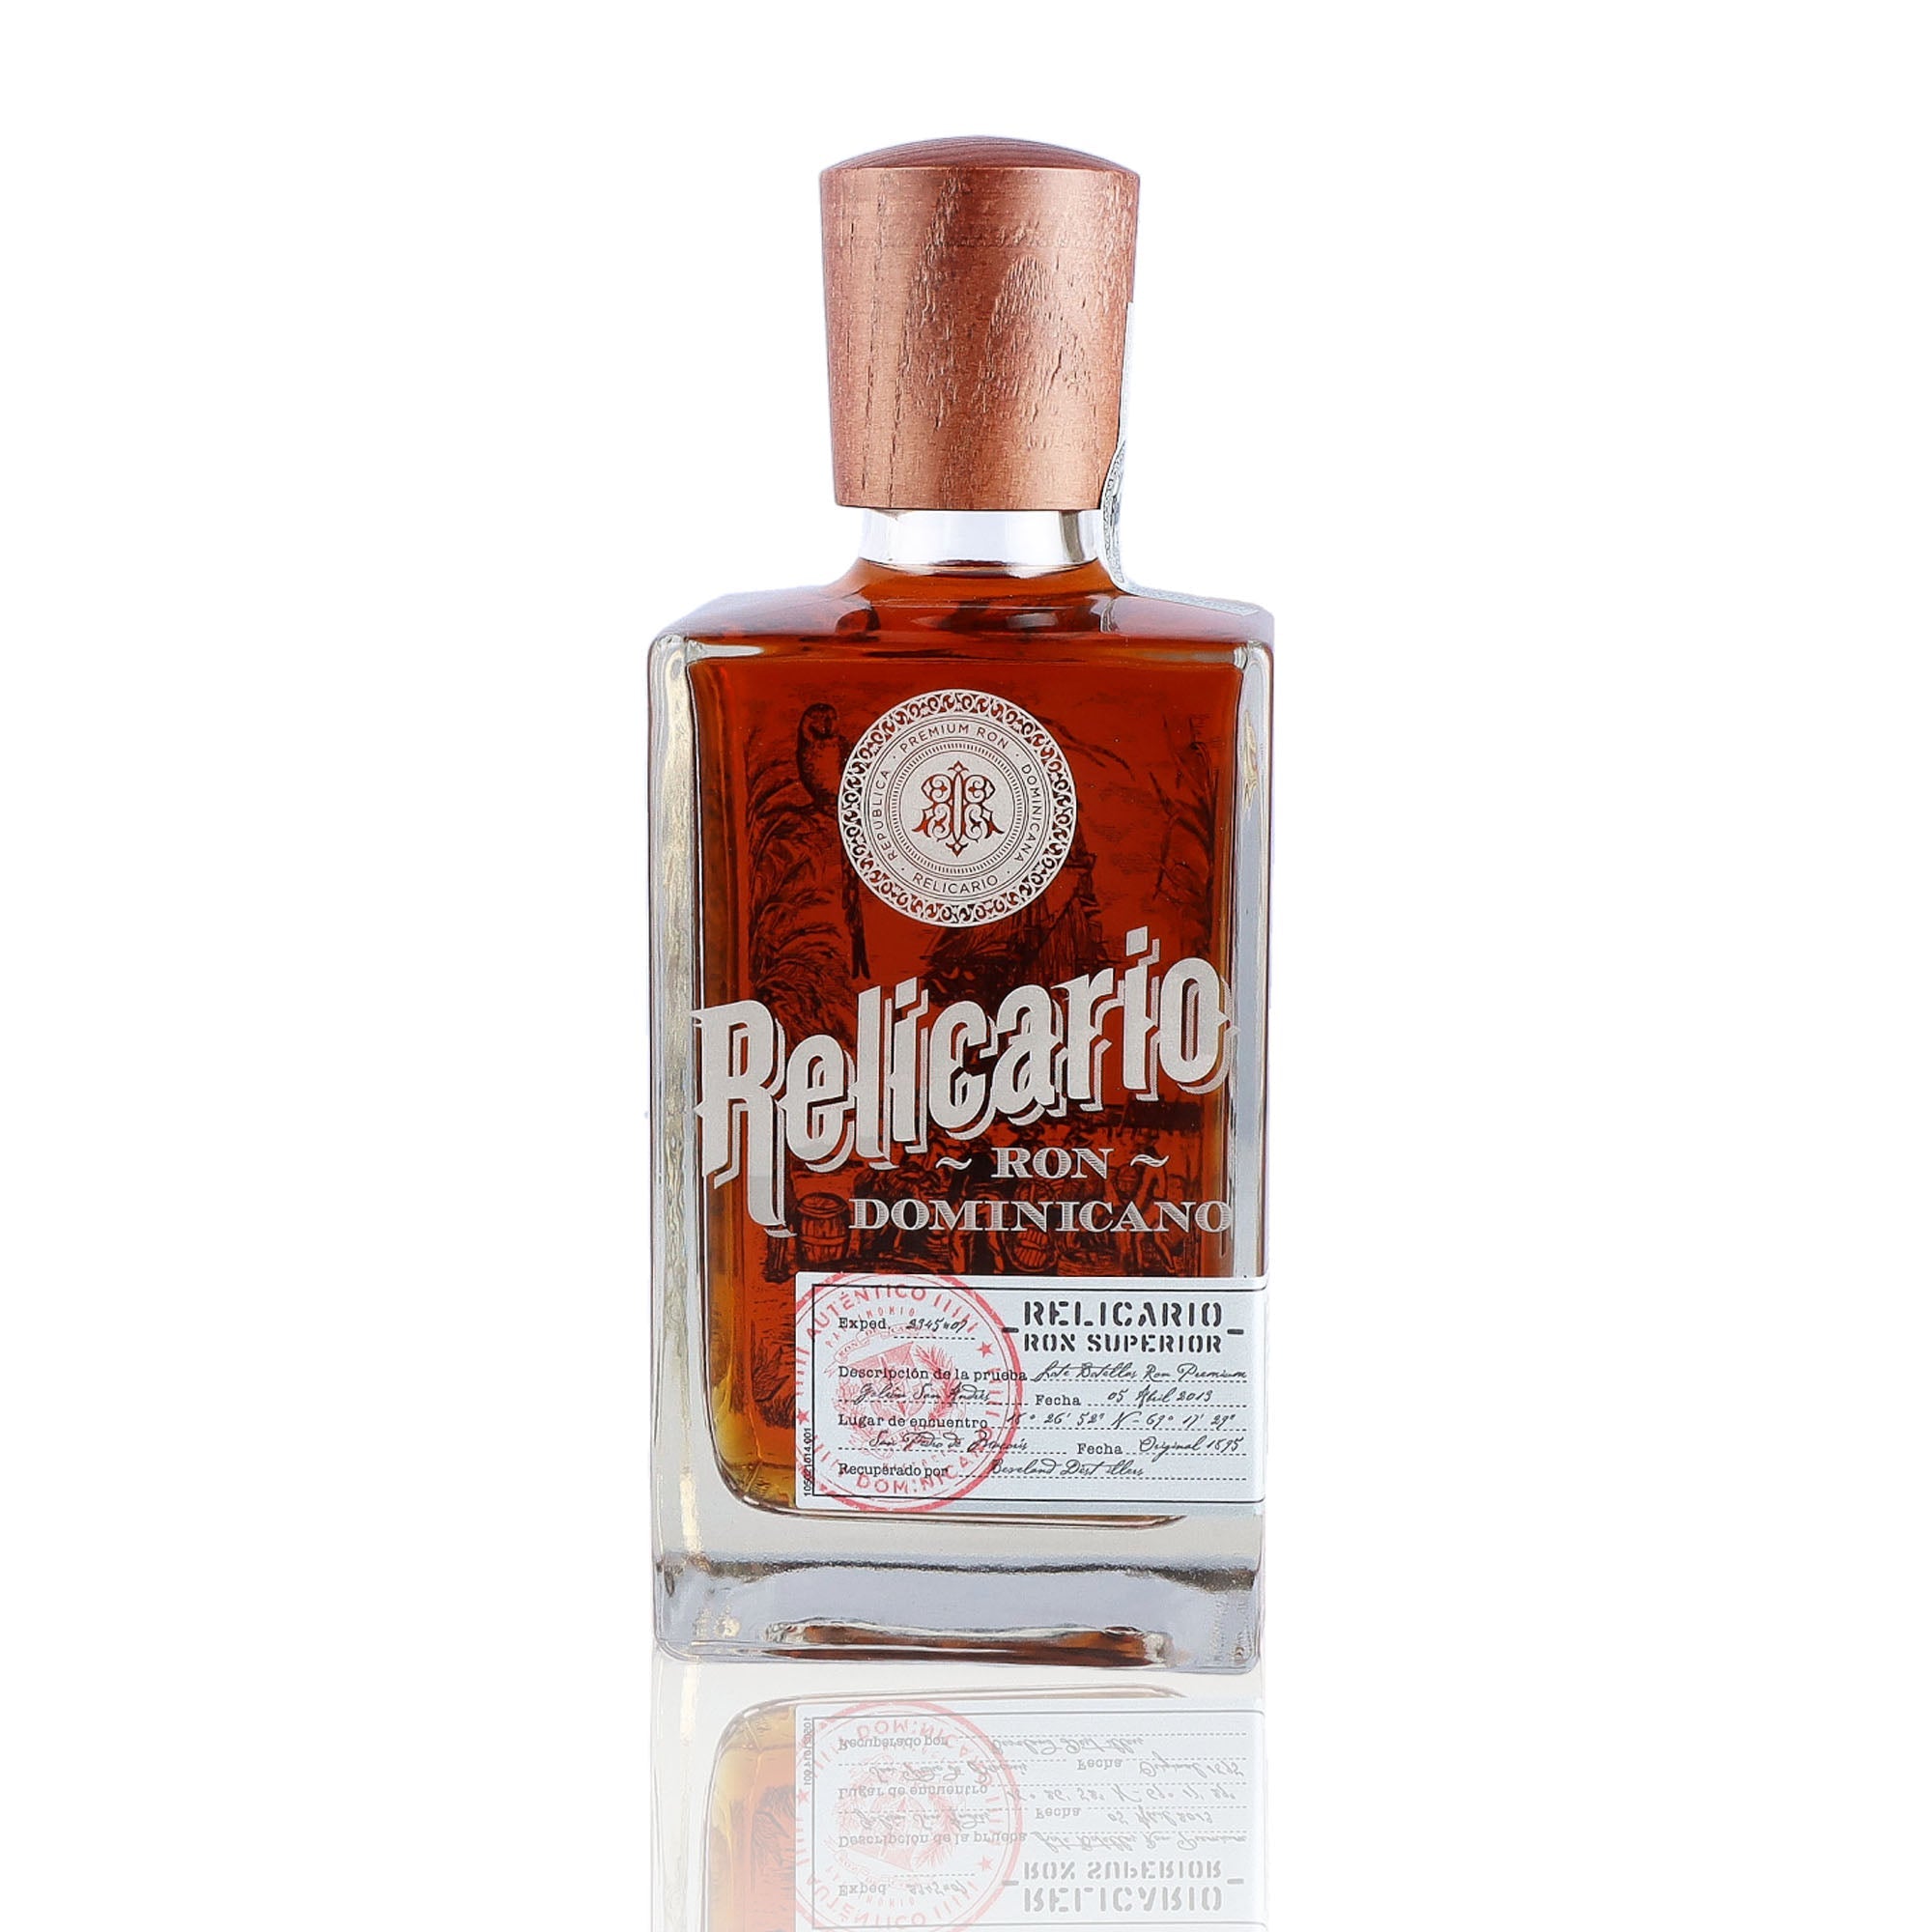 Une bouteille de rhum vieux, de la marque Relicario, nommée Superior.